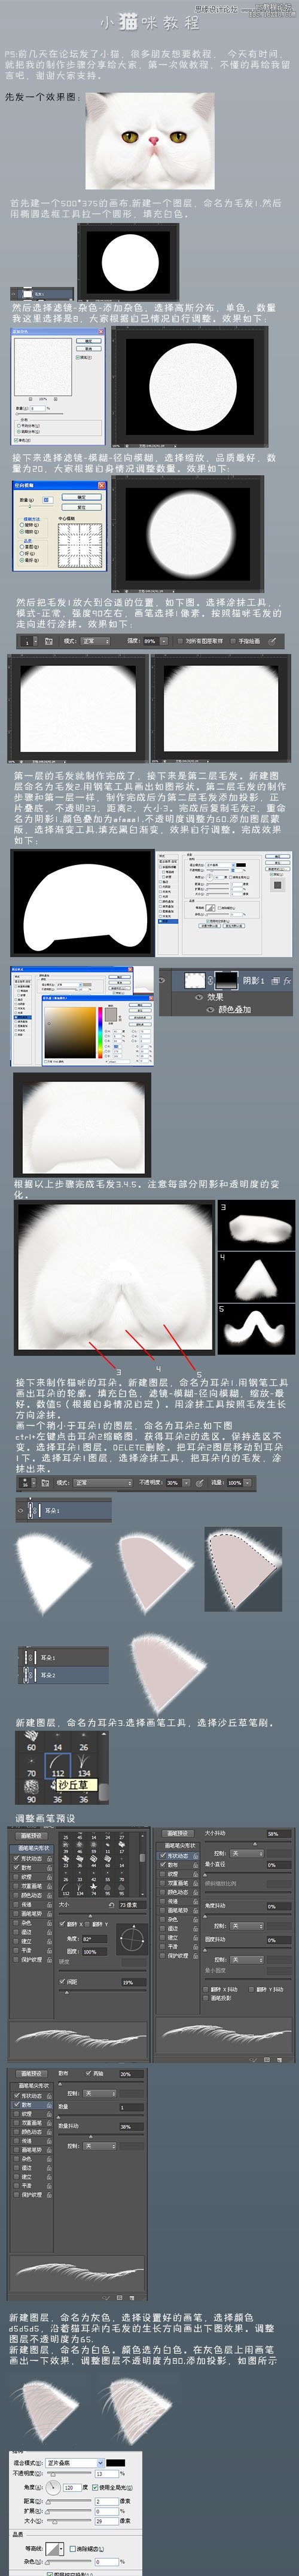 Photoshop绘制毛茸茸的猫咪教程,PS教程,16xx8.com教程网